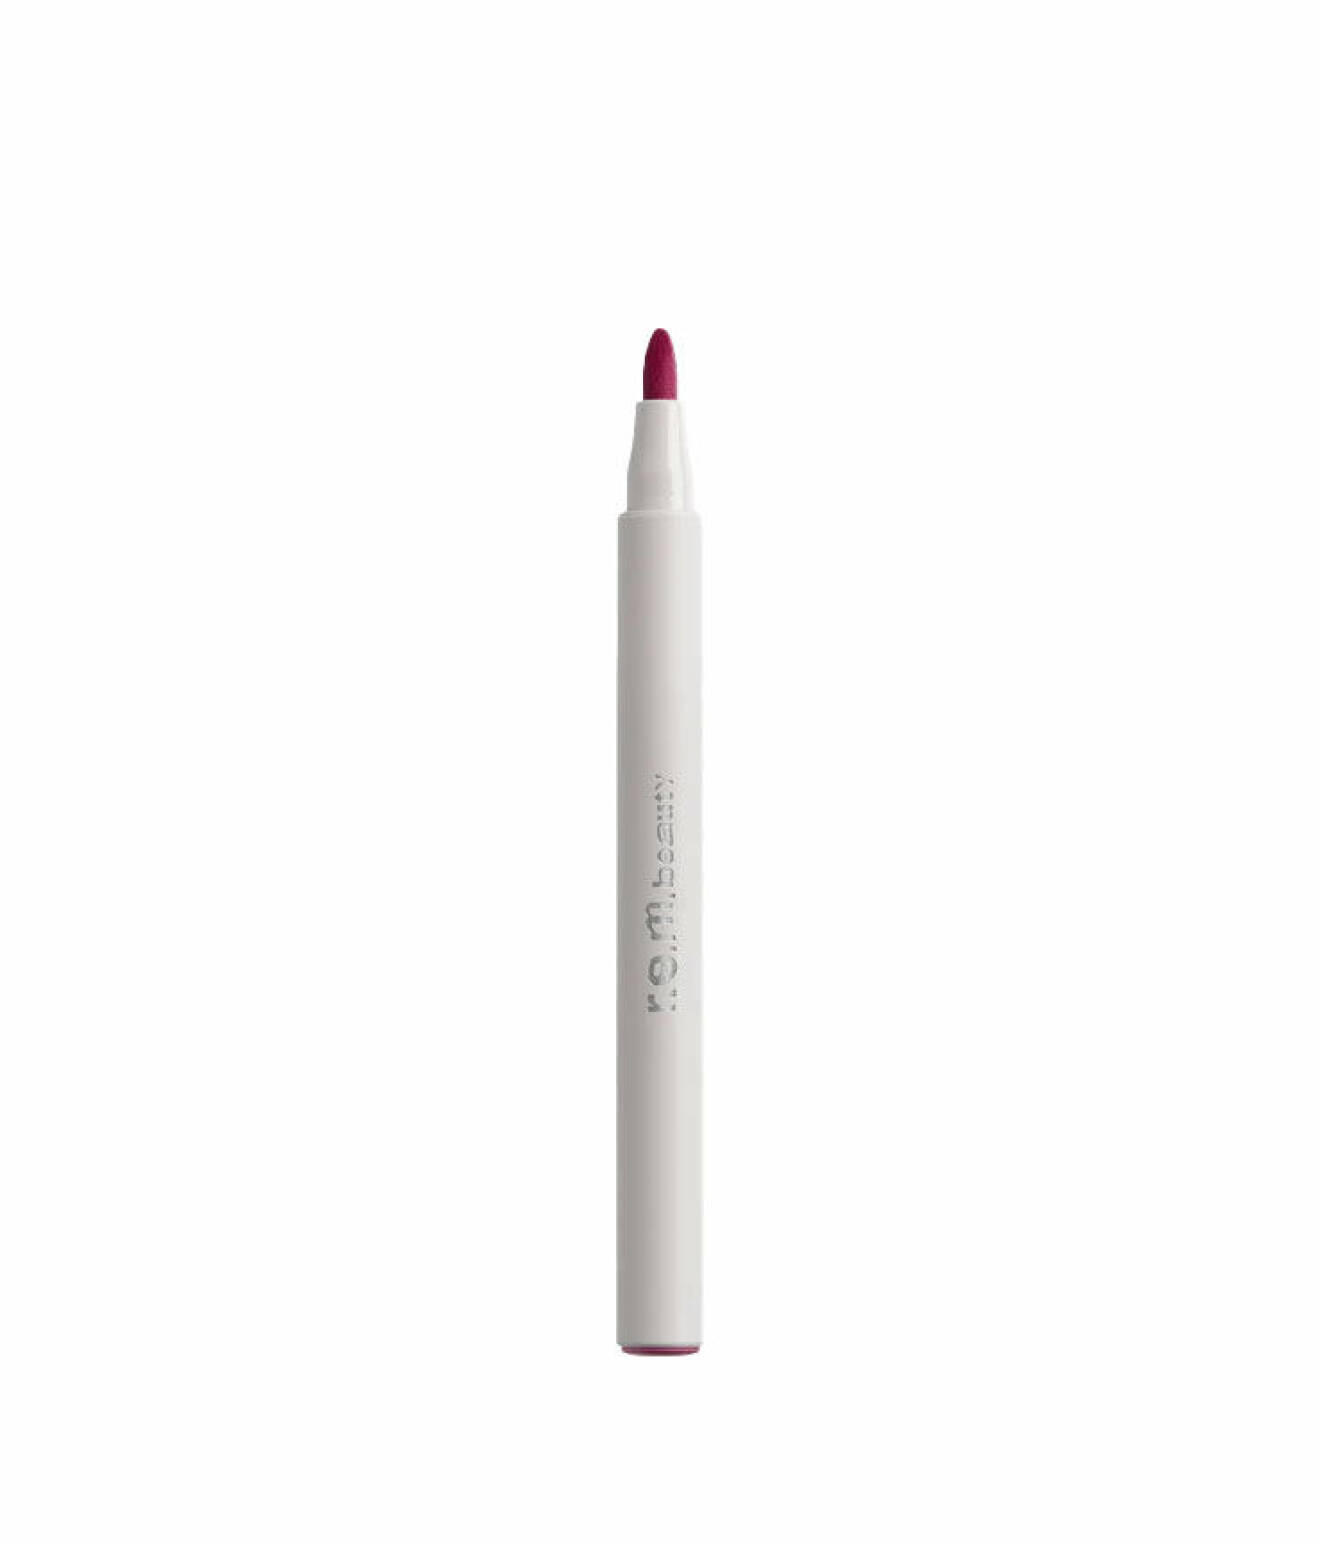 Practically permanent lip stain marker, r.e.m. beauty. Lip stain i en mjuk jordgubbsrosa färg och med en tuschpenna-liknande applikator.